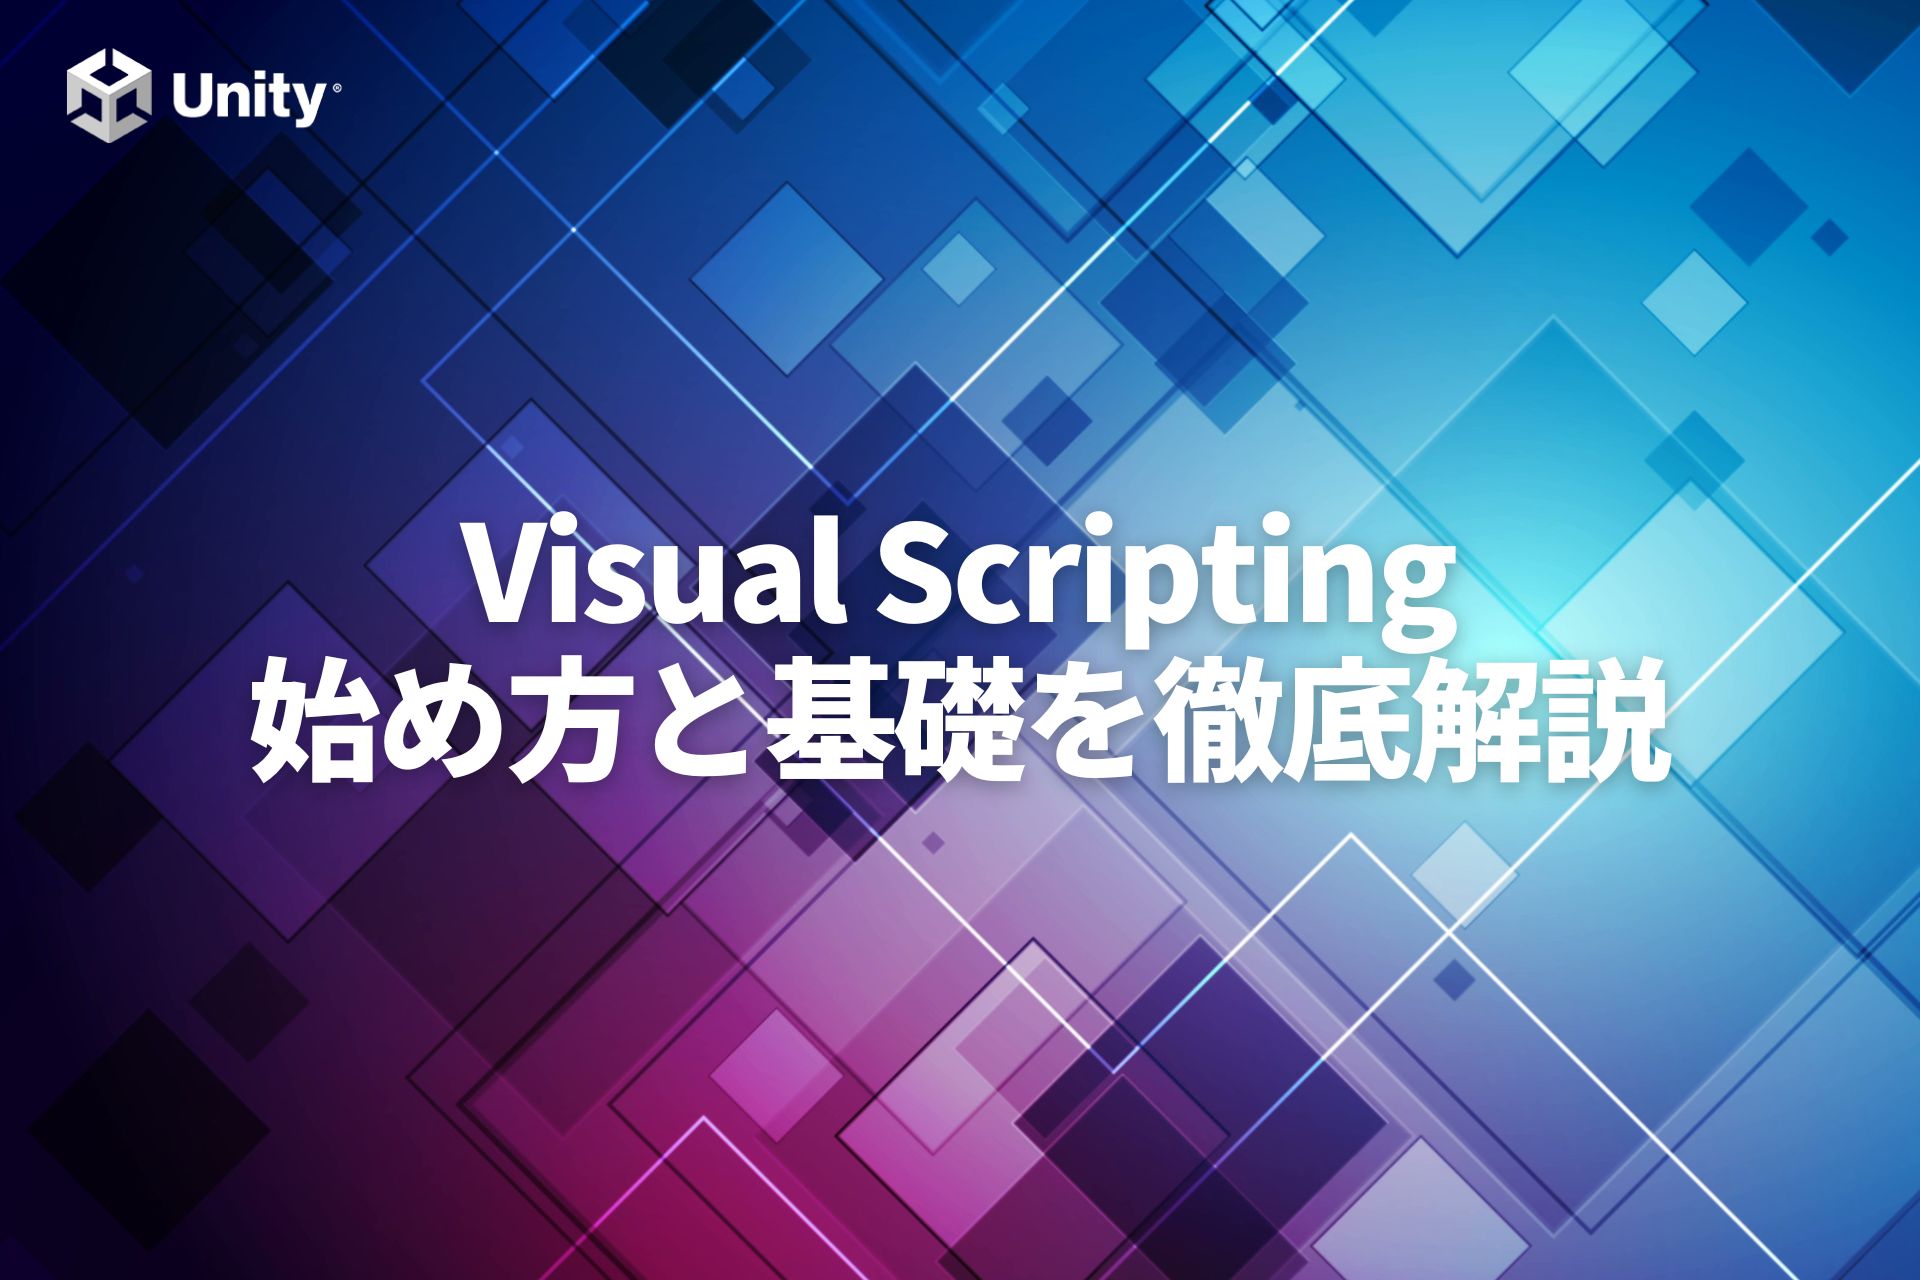 【Unity】Visual Scripting入門！始め方から基礎までを徹底解説!プログラムを書かないプログラミング？